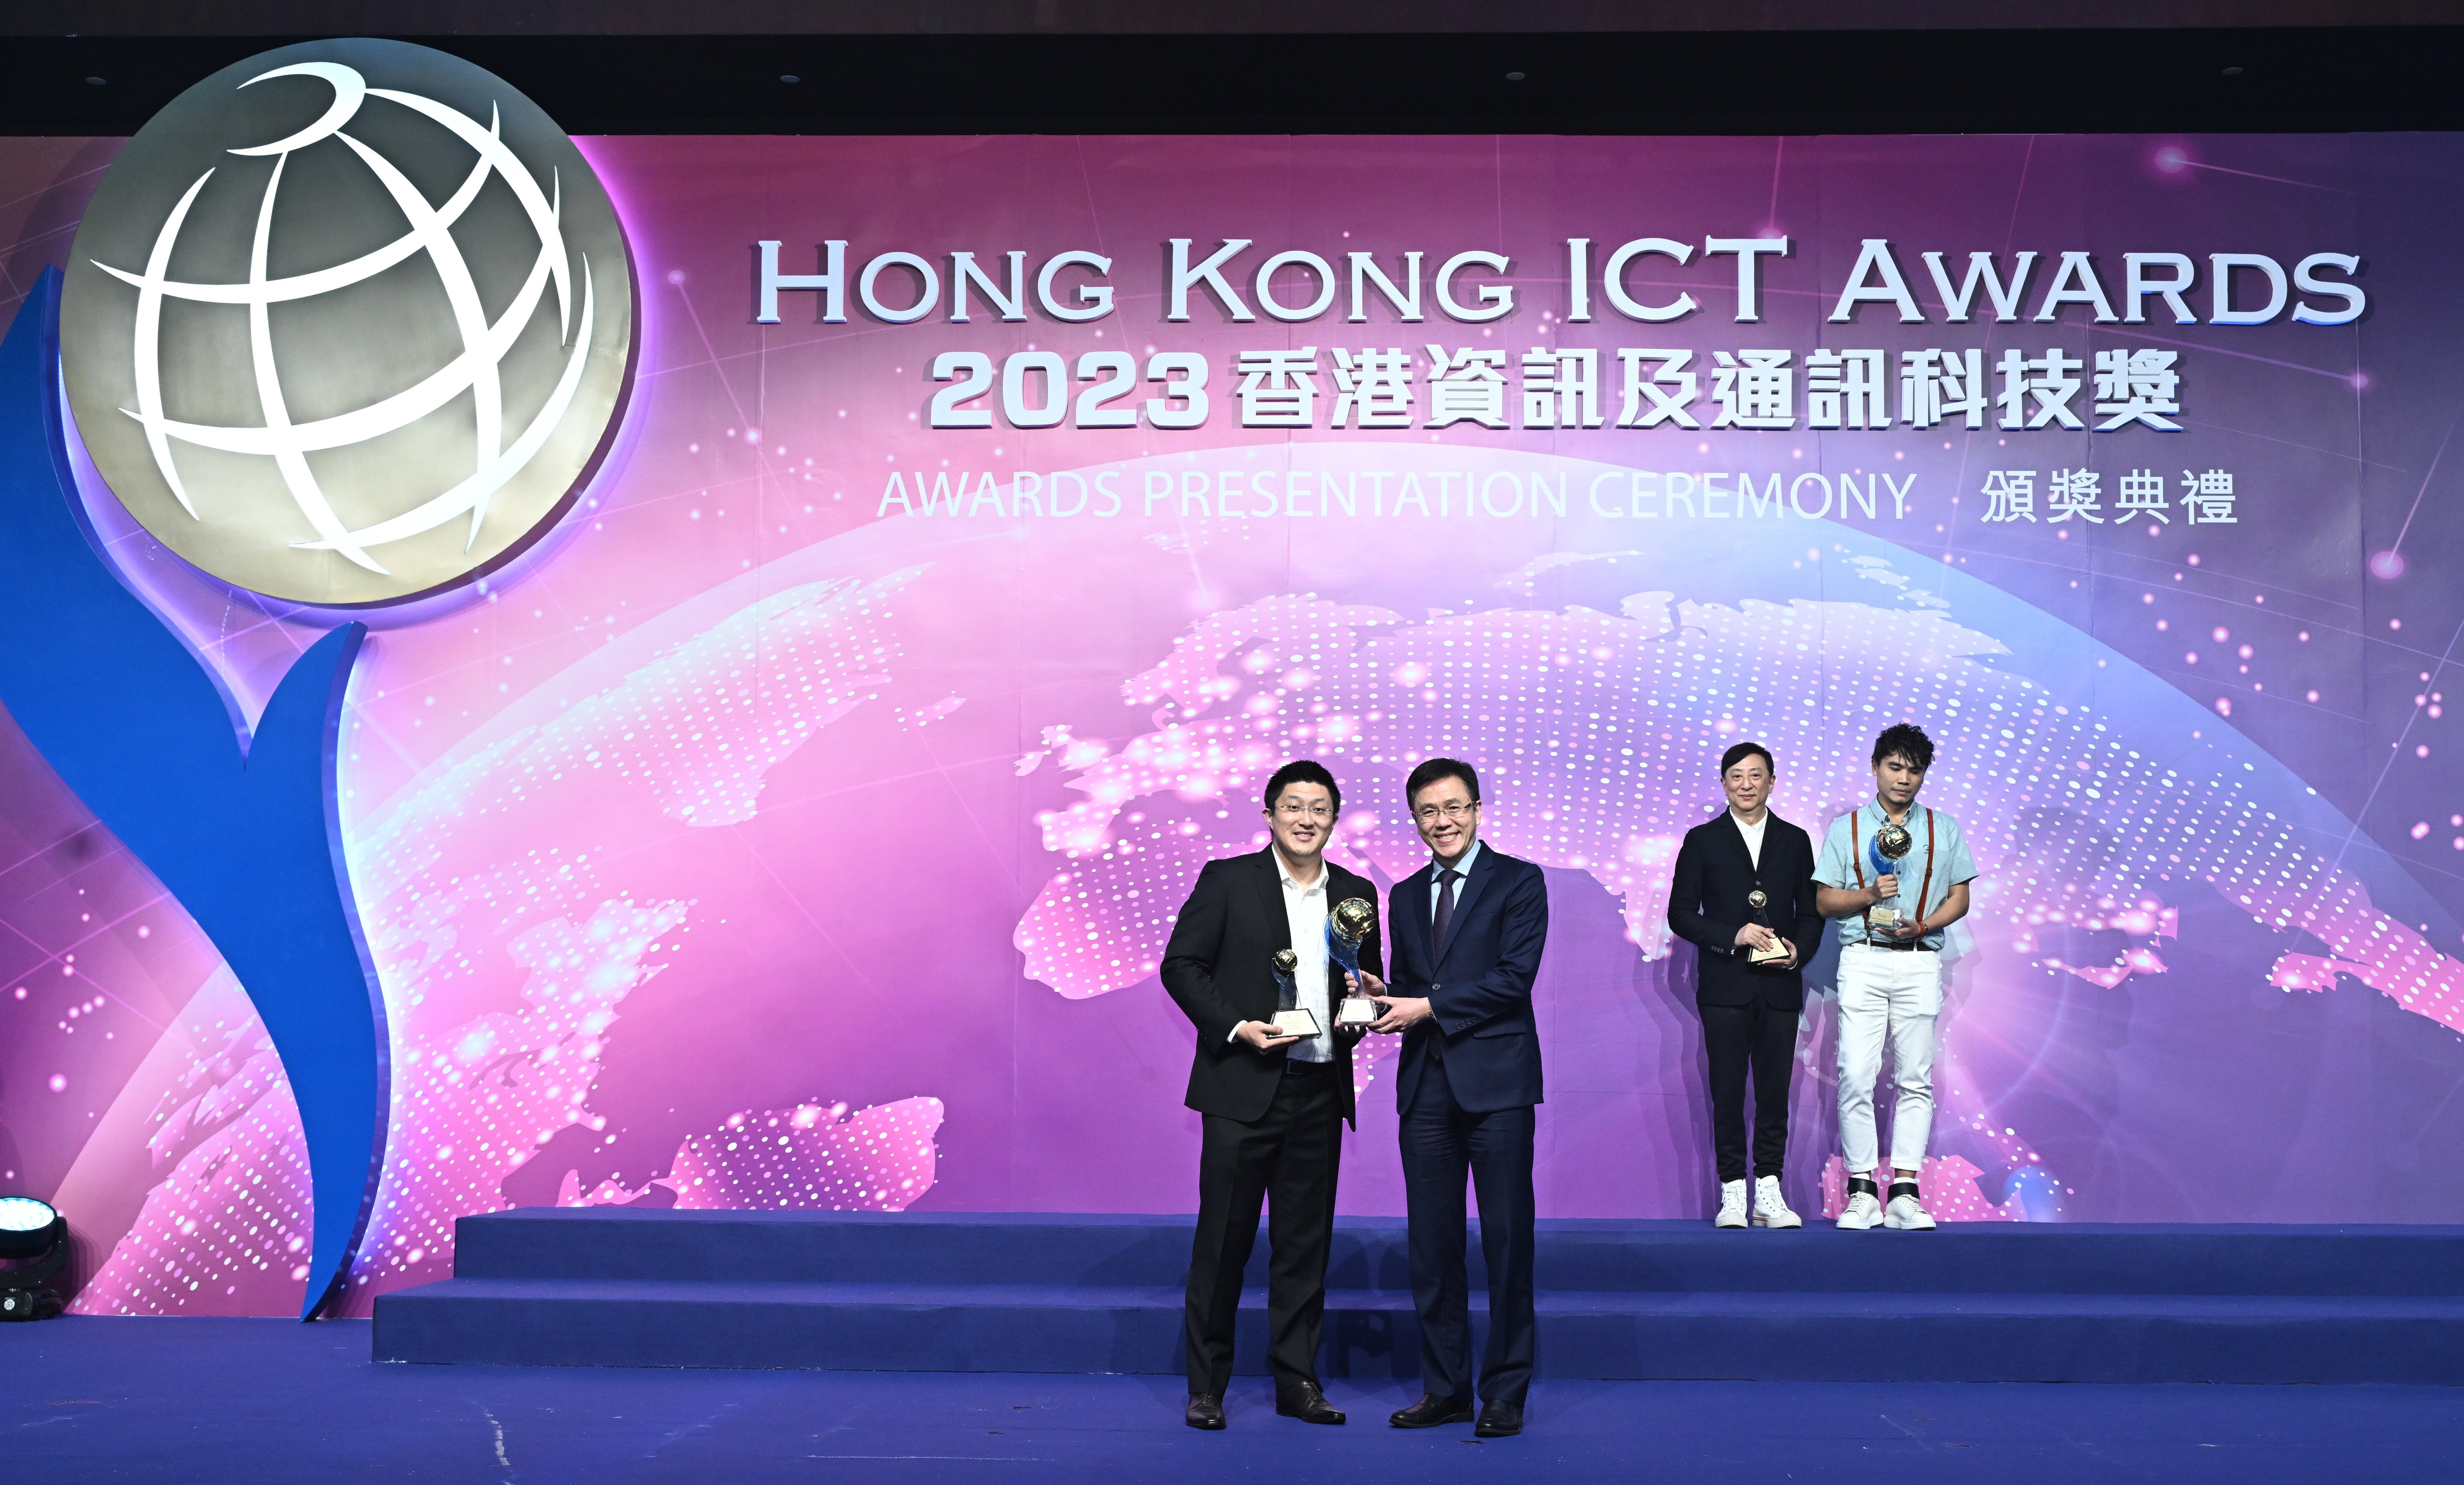 Hong Kong ICT Awards 2023 FinTech Grand Award Winner